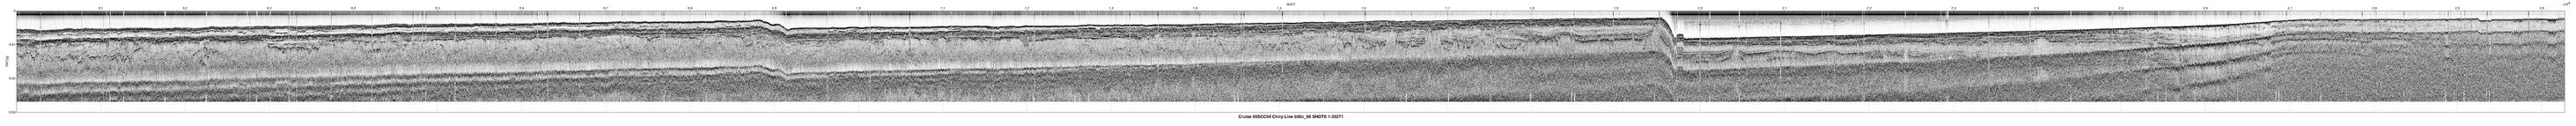 00SCC04 b00c_98 seismic profile image